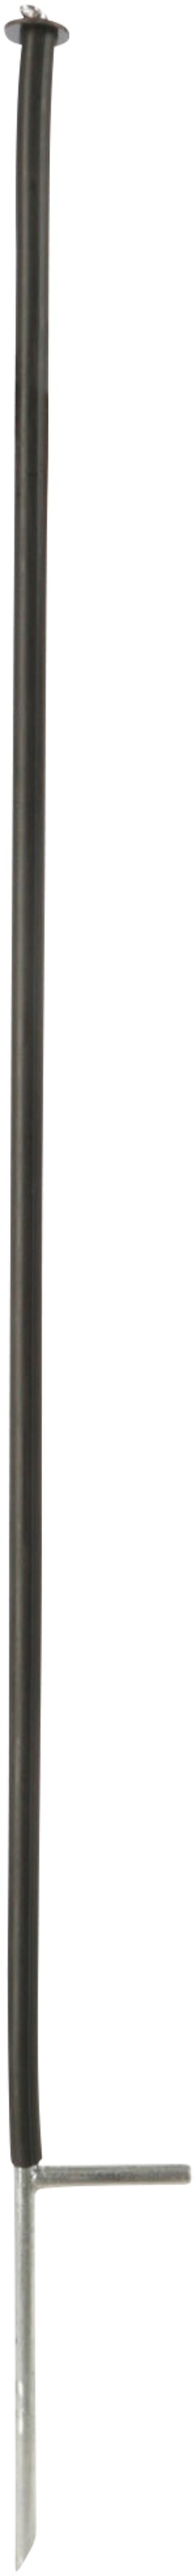 Unterstützungspfähle für Weidenetze Ø 14 mm, 145 cm